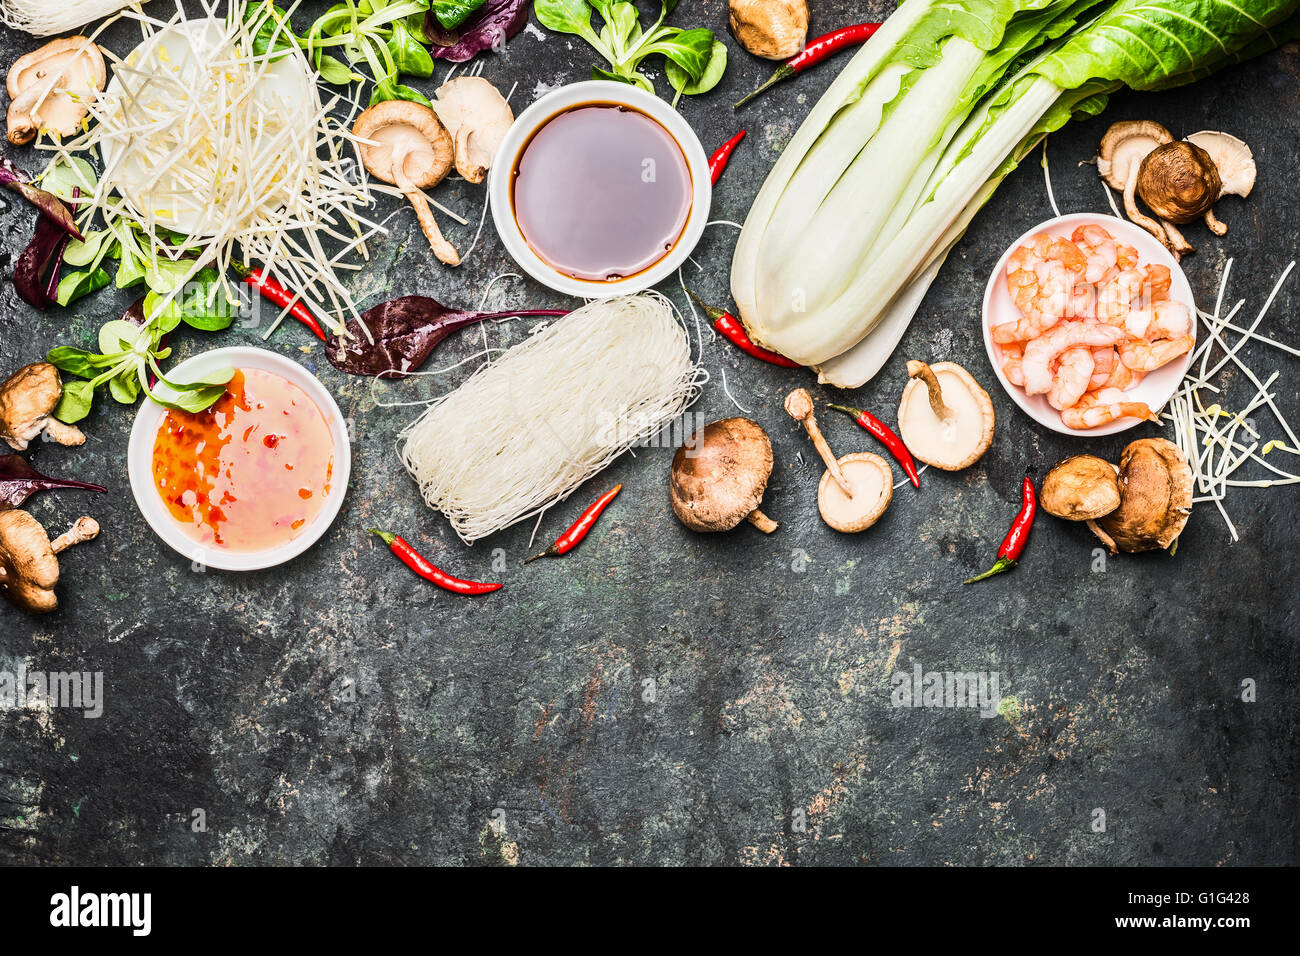 Leckere asiatische Küche Zutaten für thailändische oder chinesische Küche.  Wok unter Rühren braten Zutaten Stockfotografie - Alamy